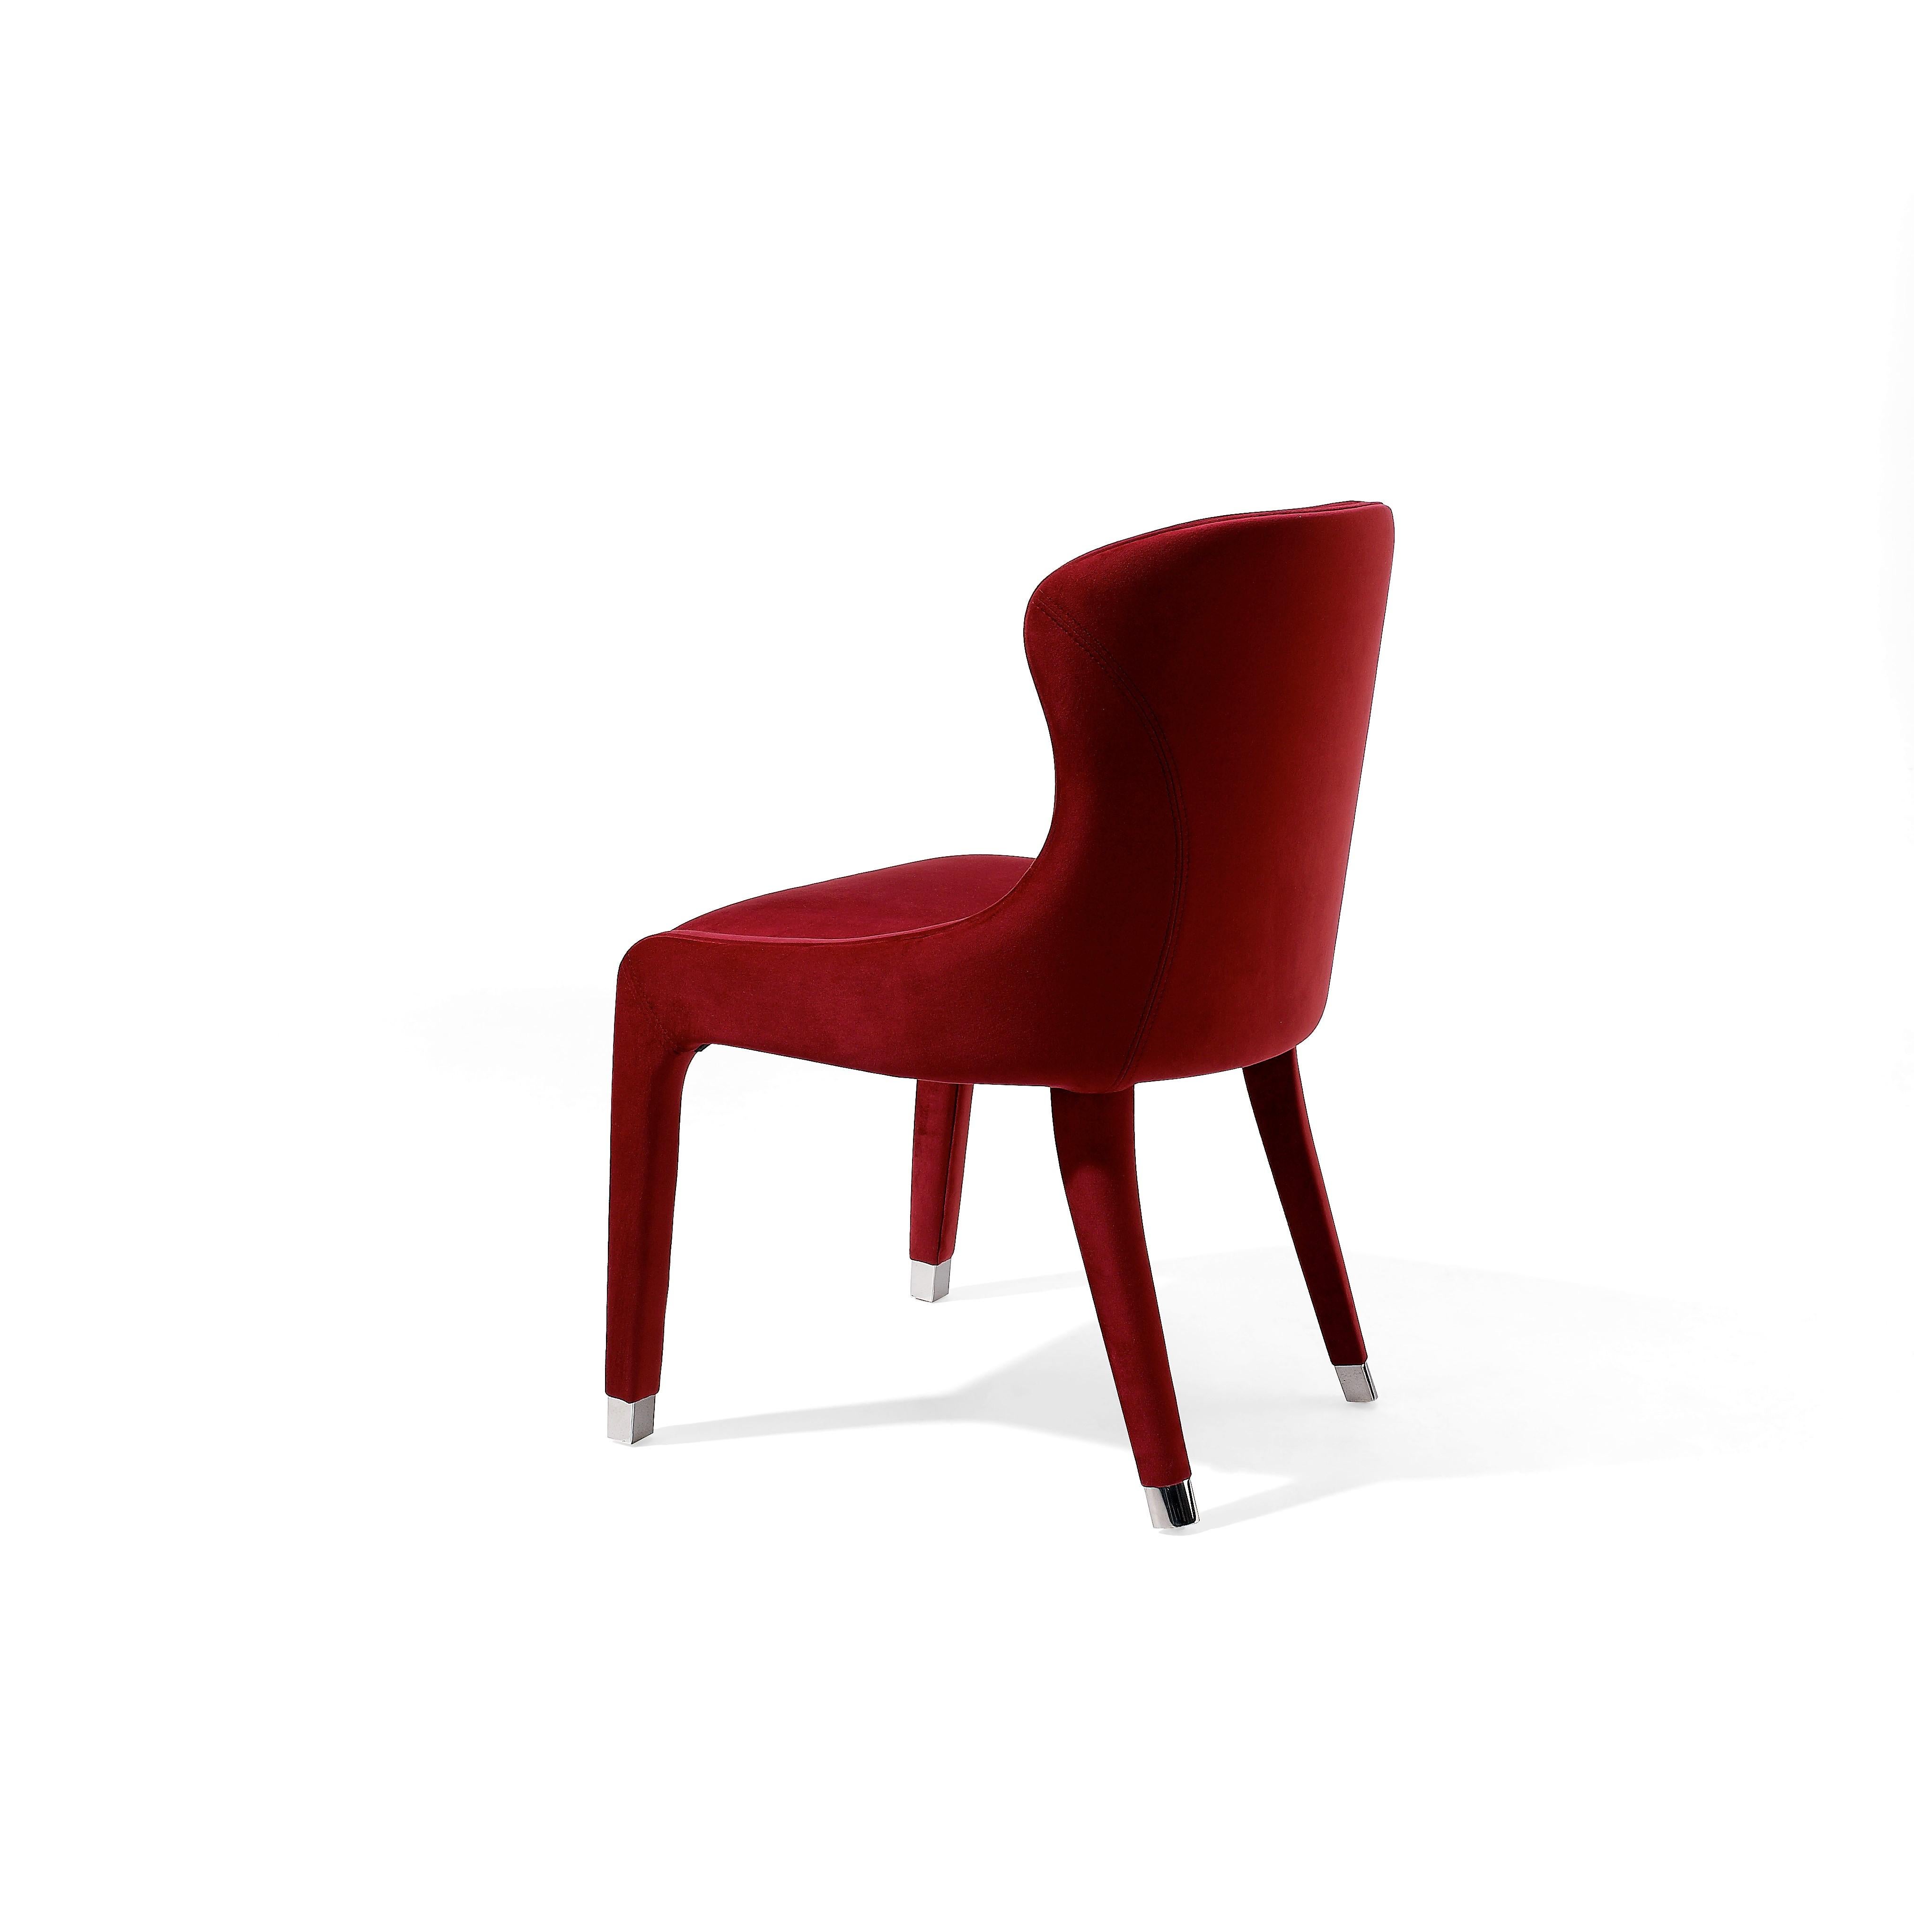 Chaise de salle à manger entièrement rembourrée en velours rouge profond.
Capuchons en acier inoxydable en chrome poli.
produit 100% européen fabriqué à la main.
Disponible en COM et autres finitions en velours et métal.
